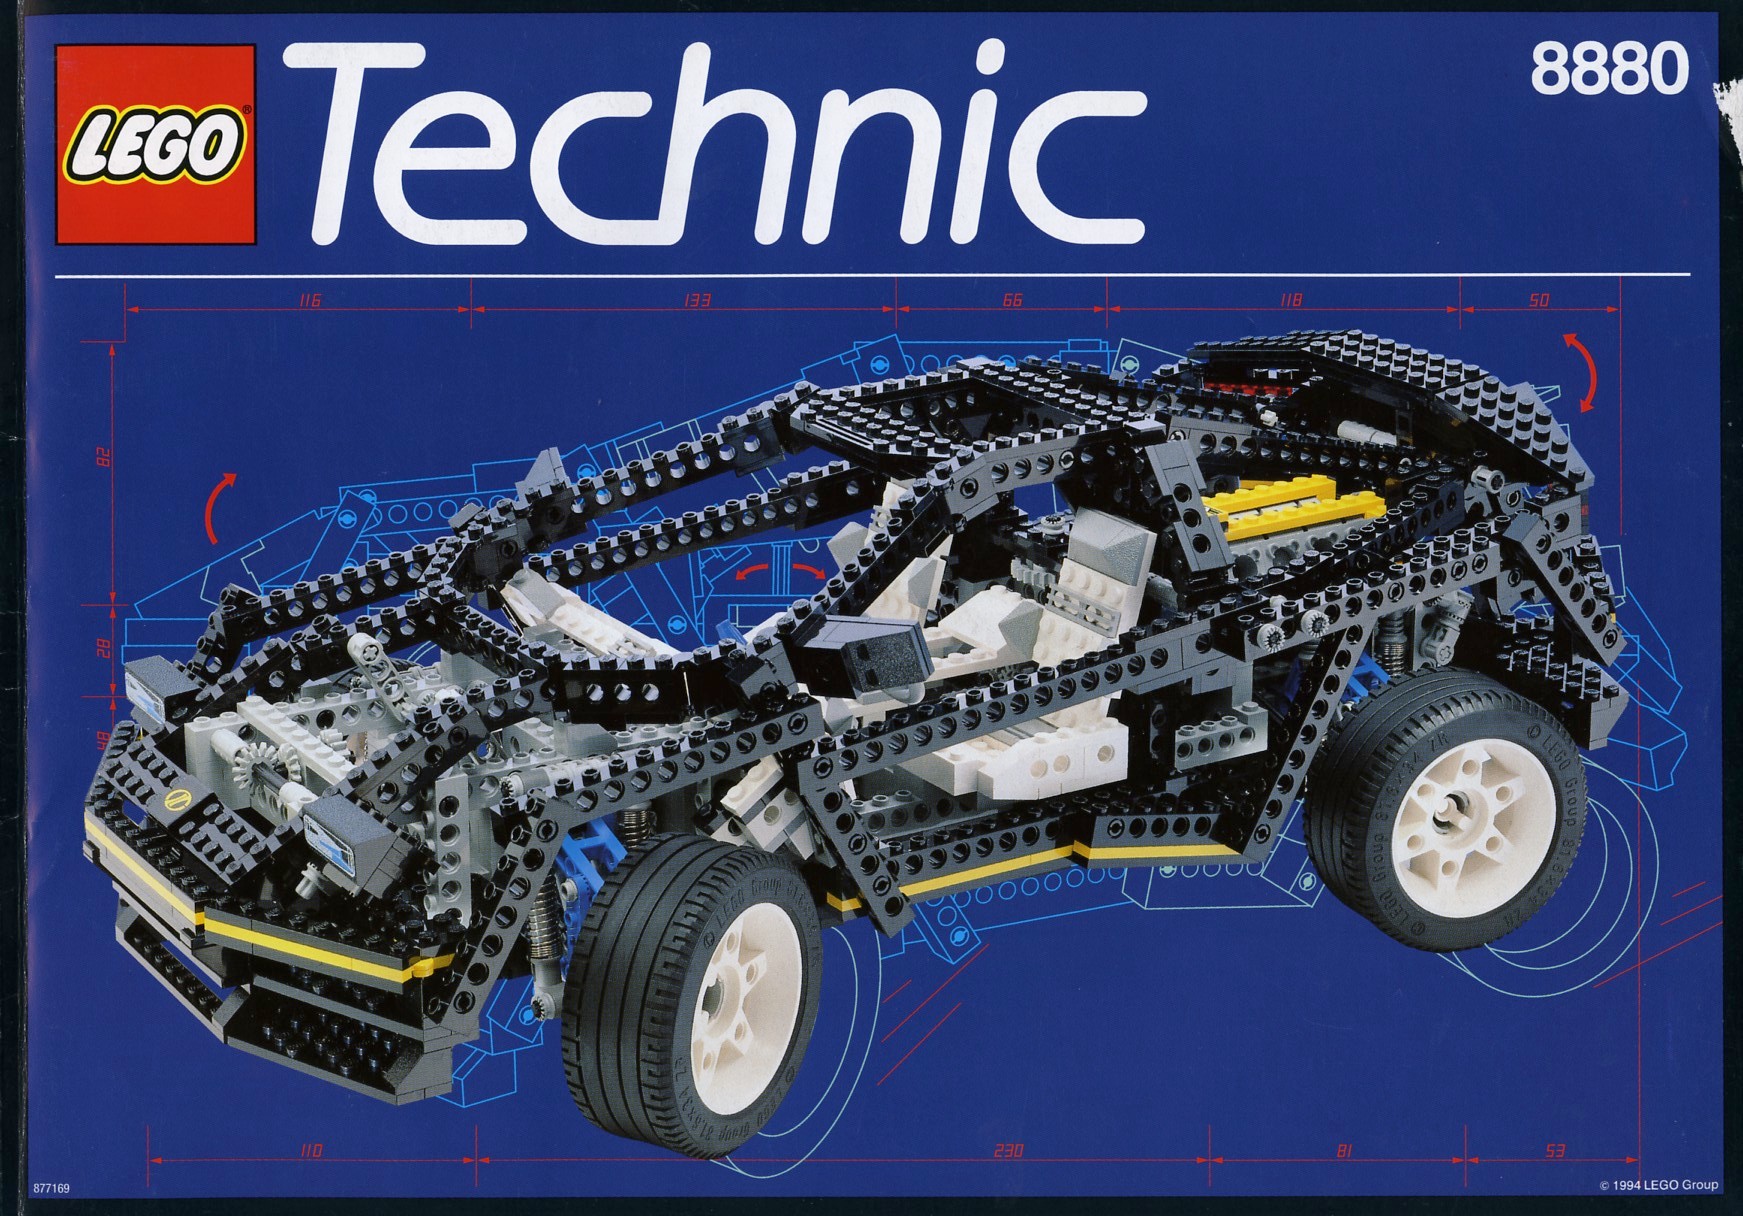 Efterår Optimistisk tonehøjde 8880 Super Car The best engineered classic Technic set of the 1990s |  Brickset